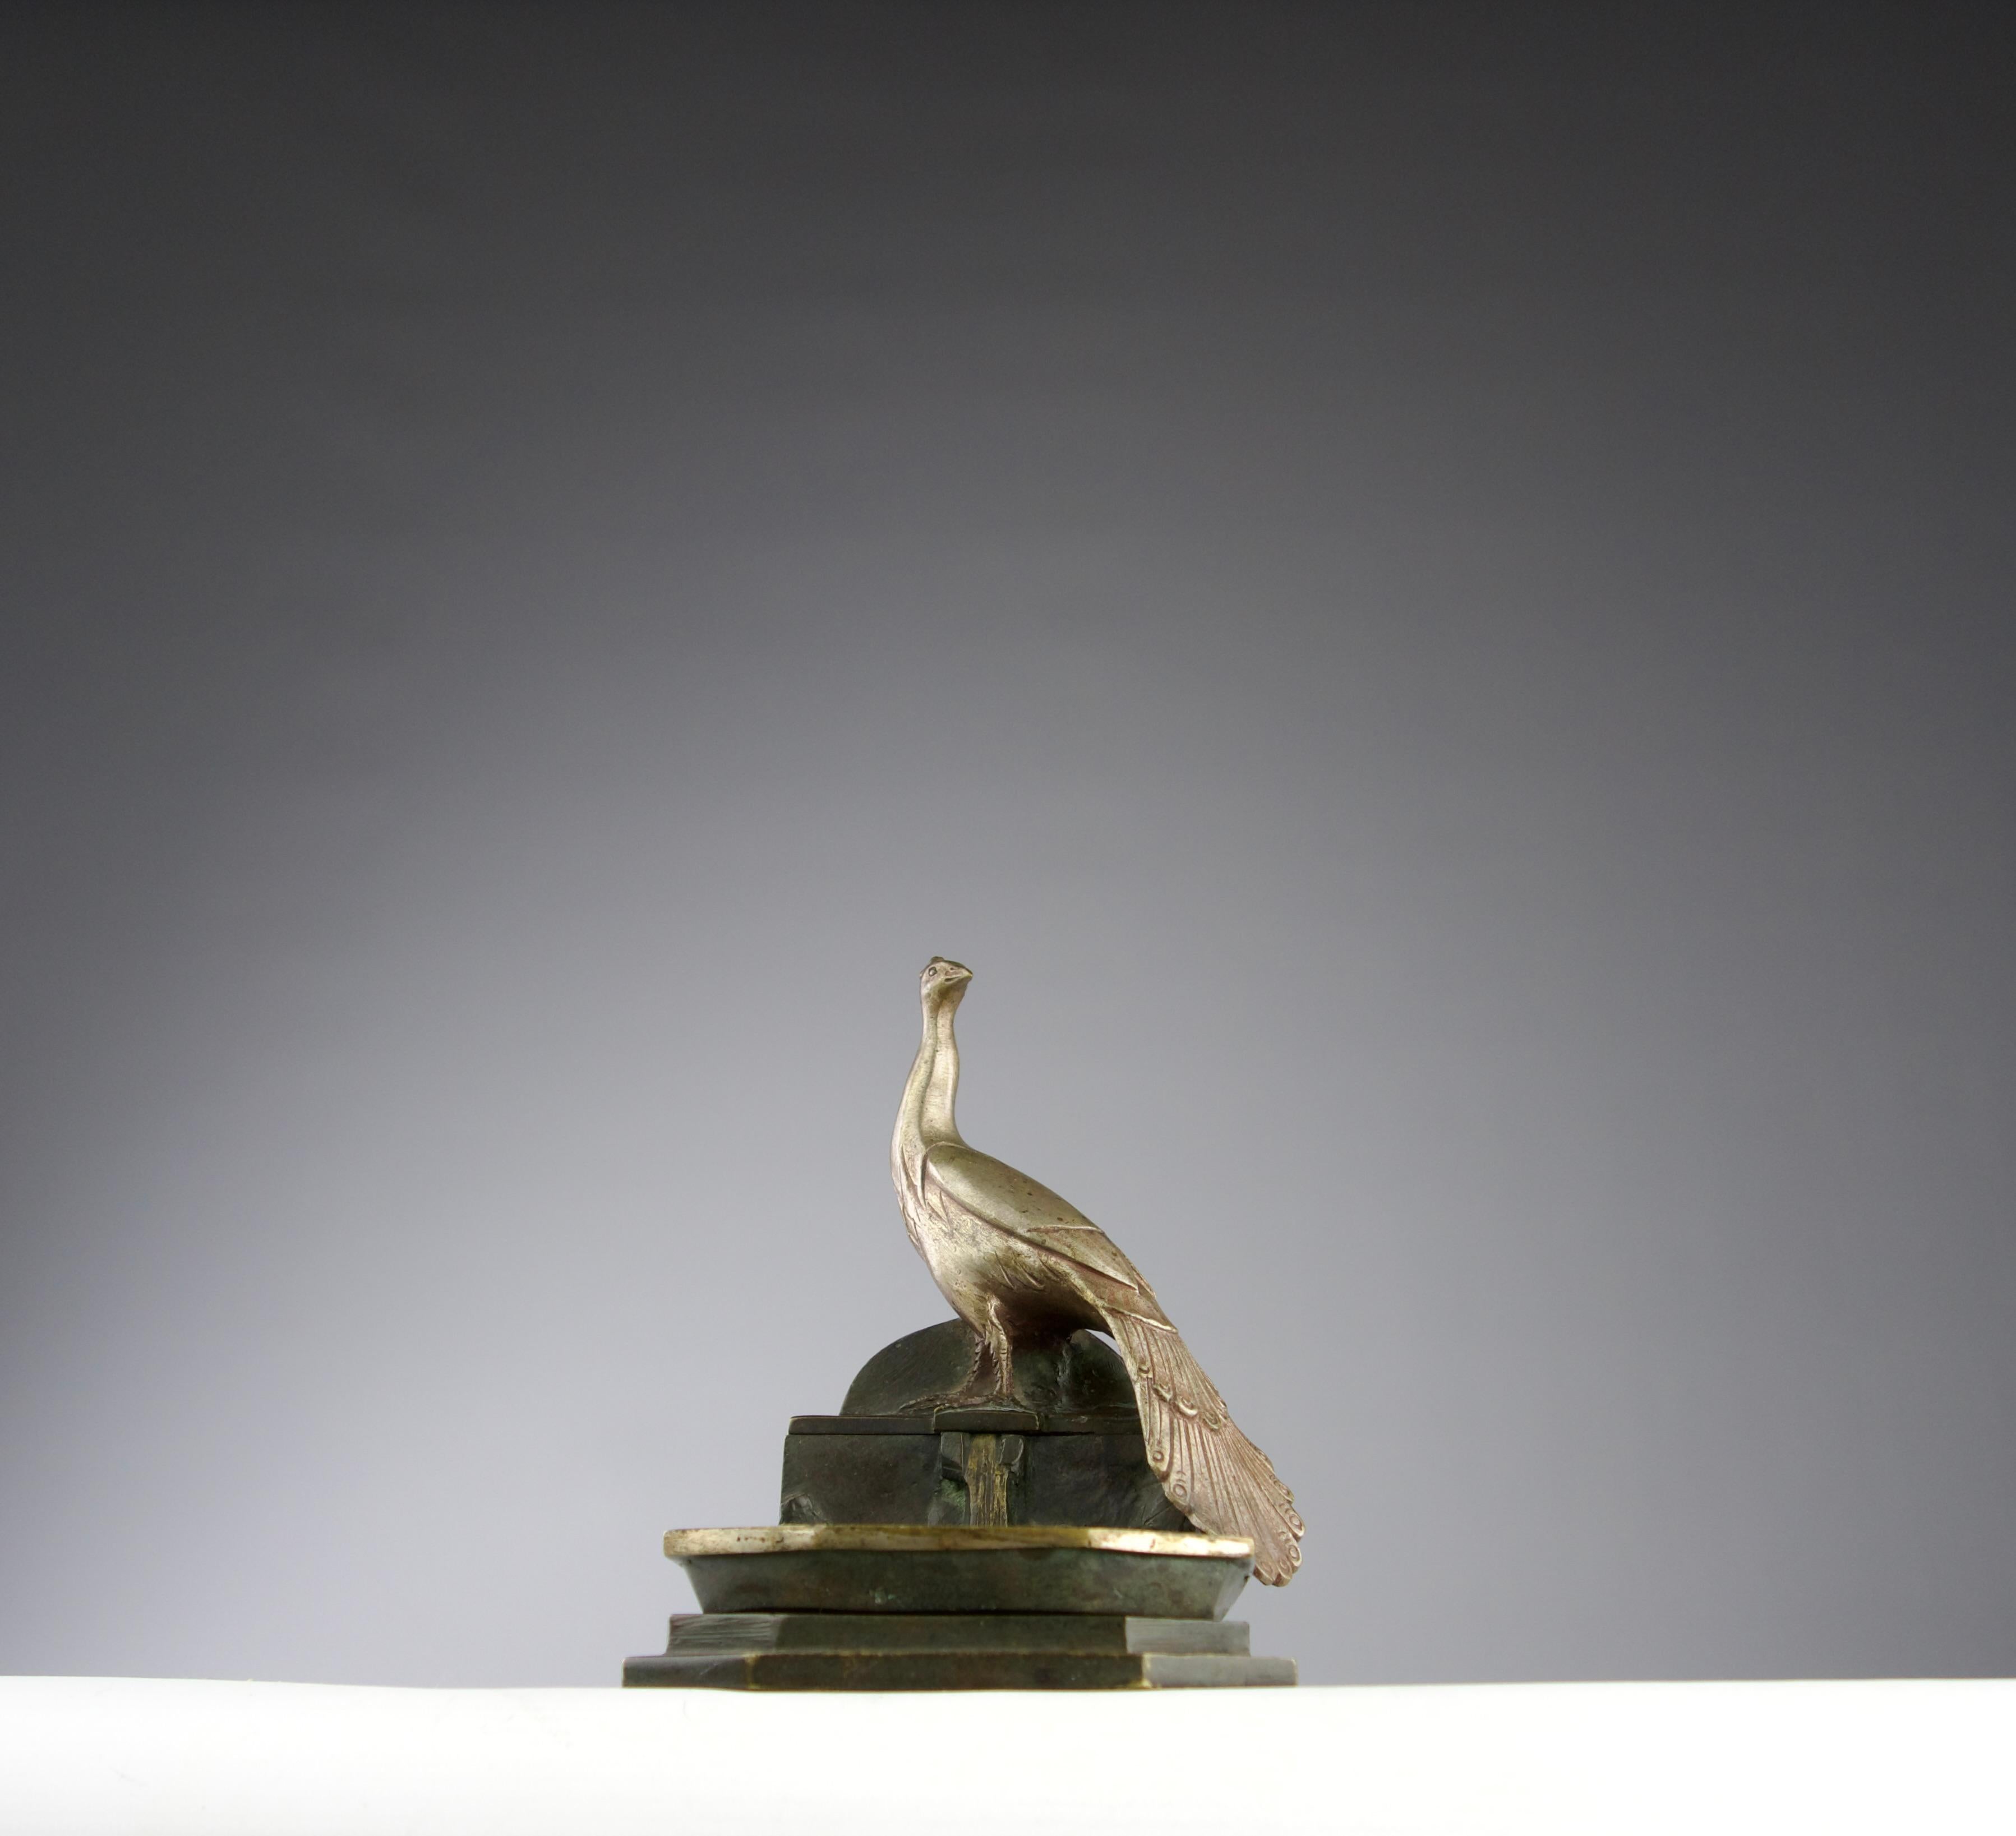 Beau et rare réceptacle sculptural art nouveau d'Albert Marionnet en bronze doré, argenté et patiné. Représentation d'un paon au sommet d'une fontaine. Signé par l'artiste sur plusieurs parties de l'œuvre.

En très bon état, oxydation du